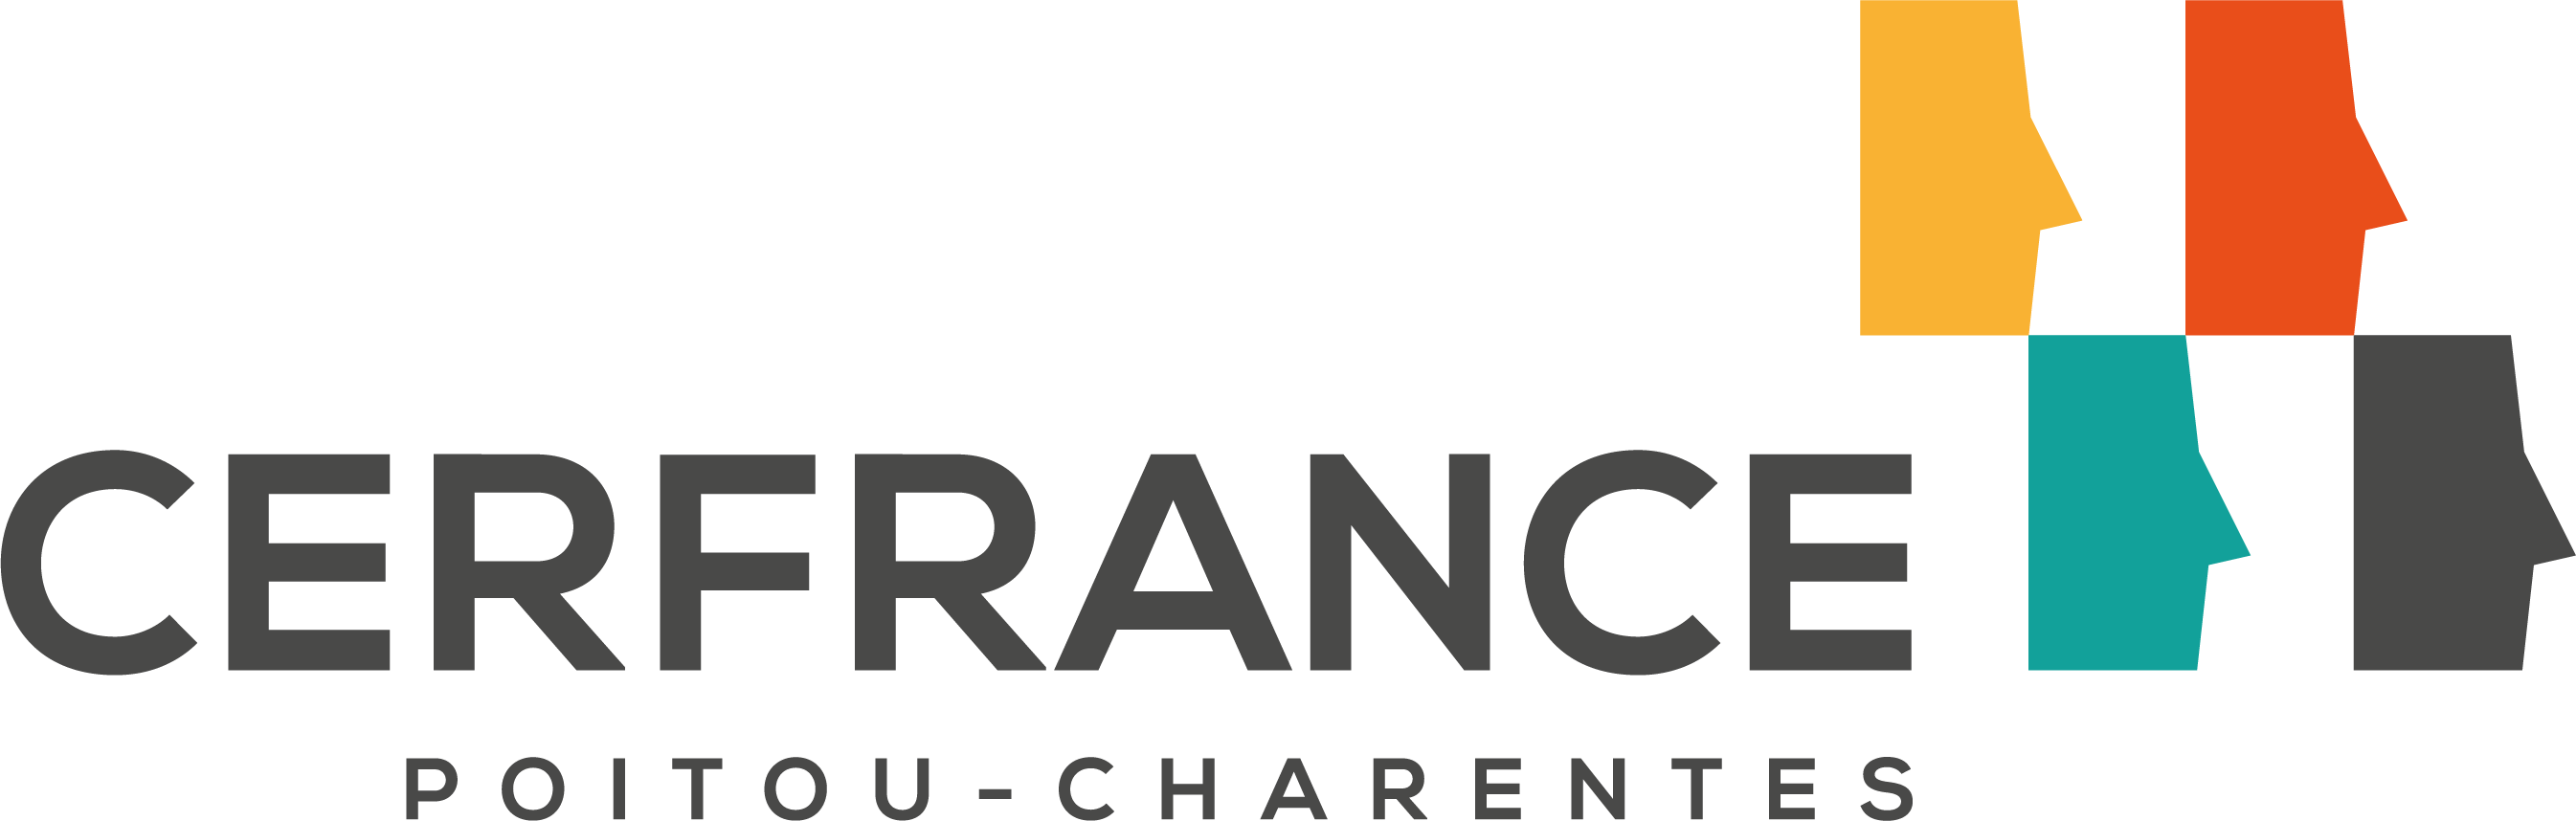 Logo Cerfrance Poitou-Charentes